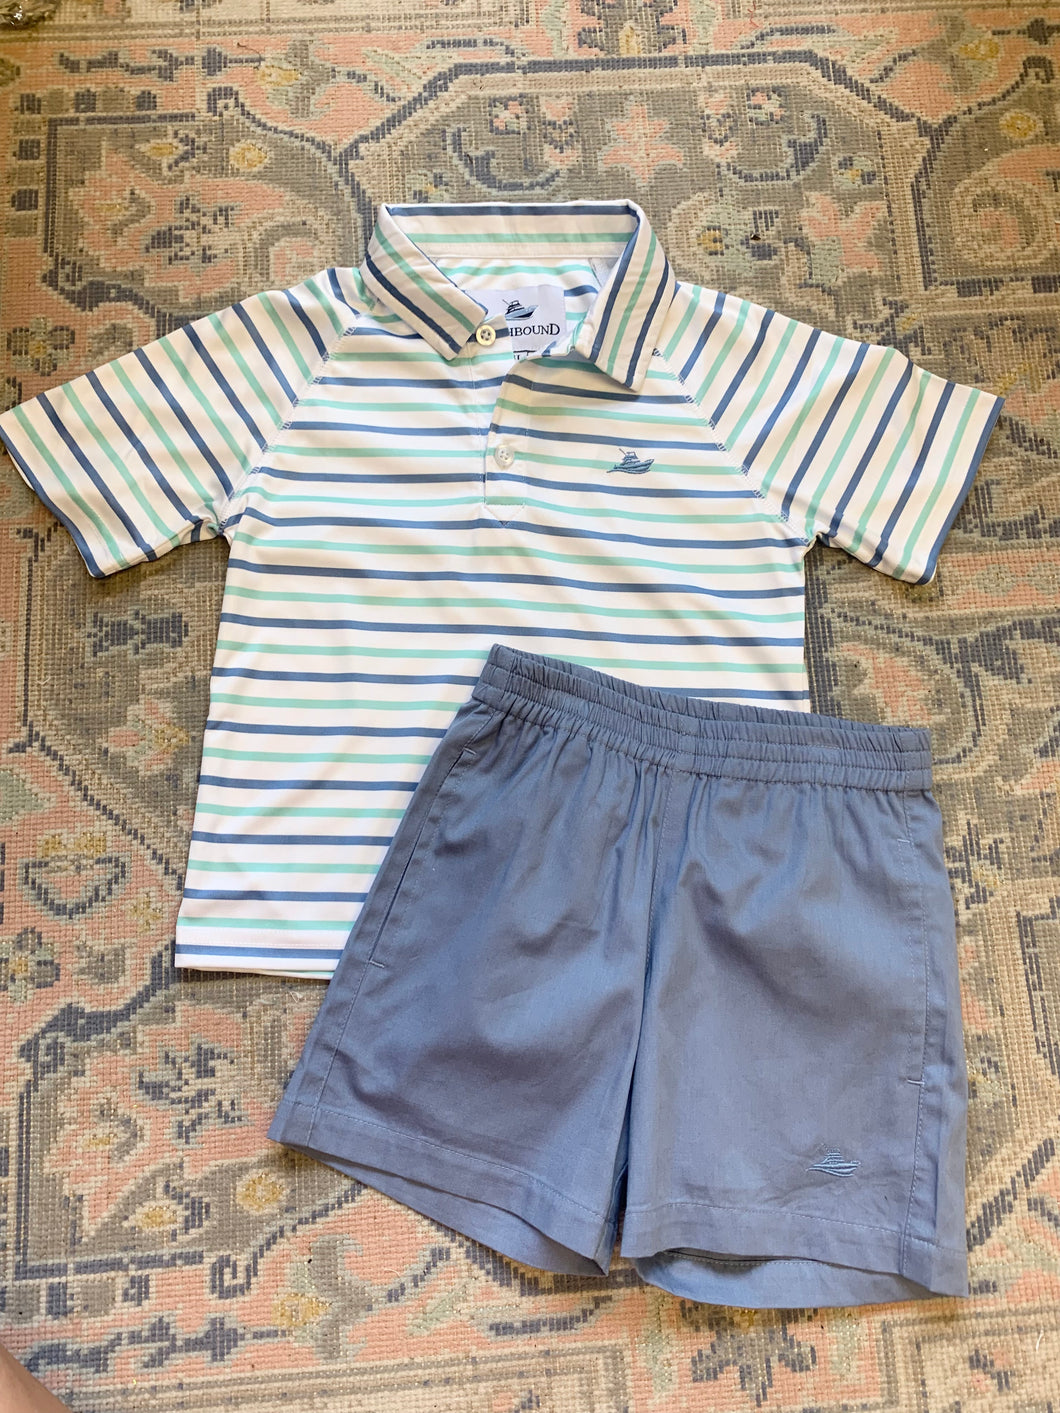 Boy's Polo- White, Allure Blue, and Seafoam Stripe